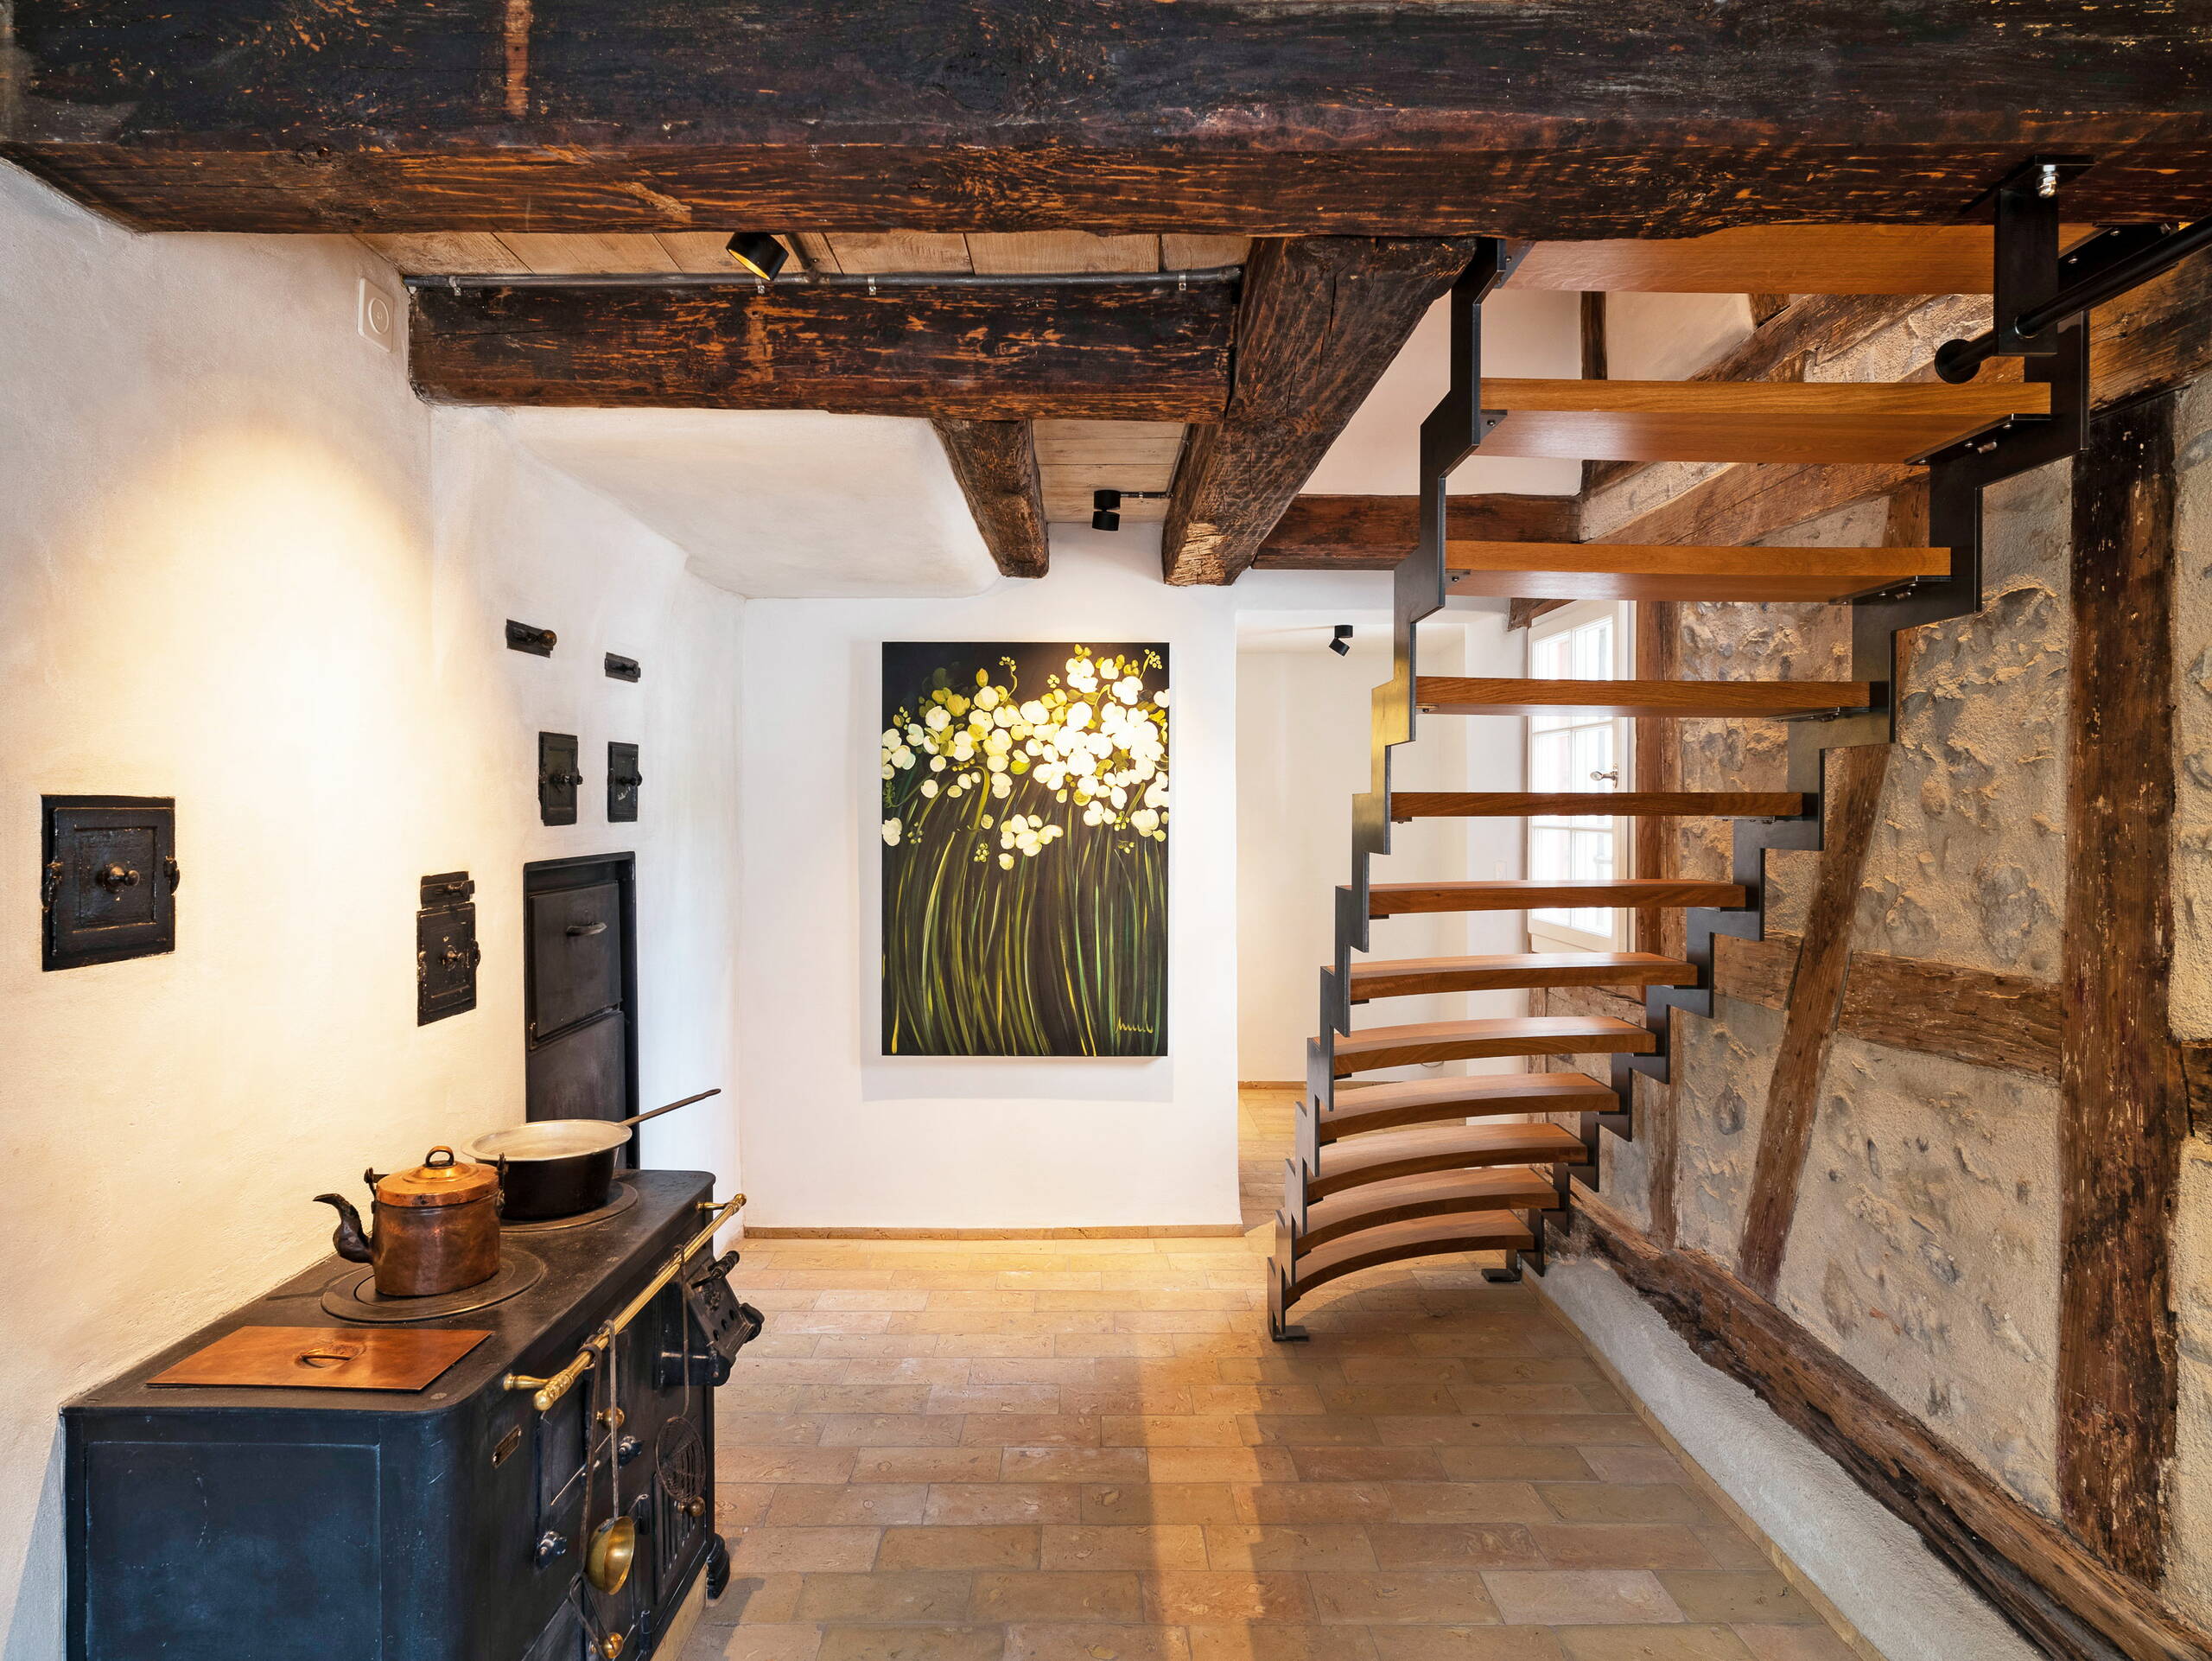 Sicht in einen Raum mit alten Holzbalken an der Decke und einer Treppe aus Holz und Metall in den zweiten Stock.